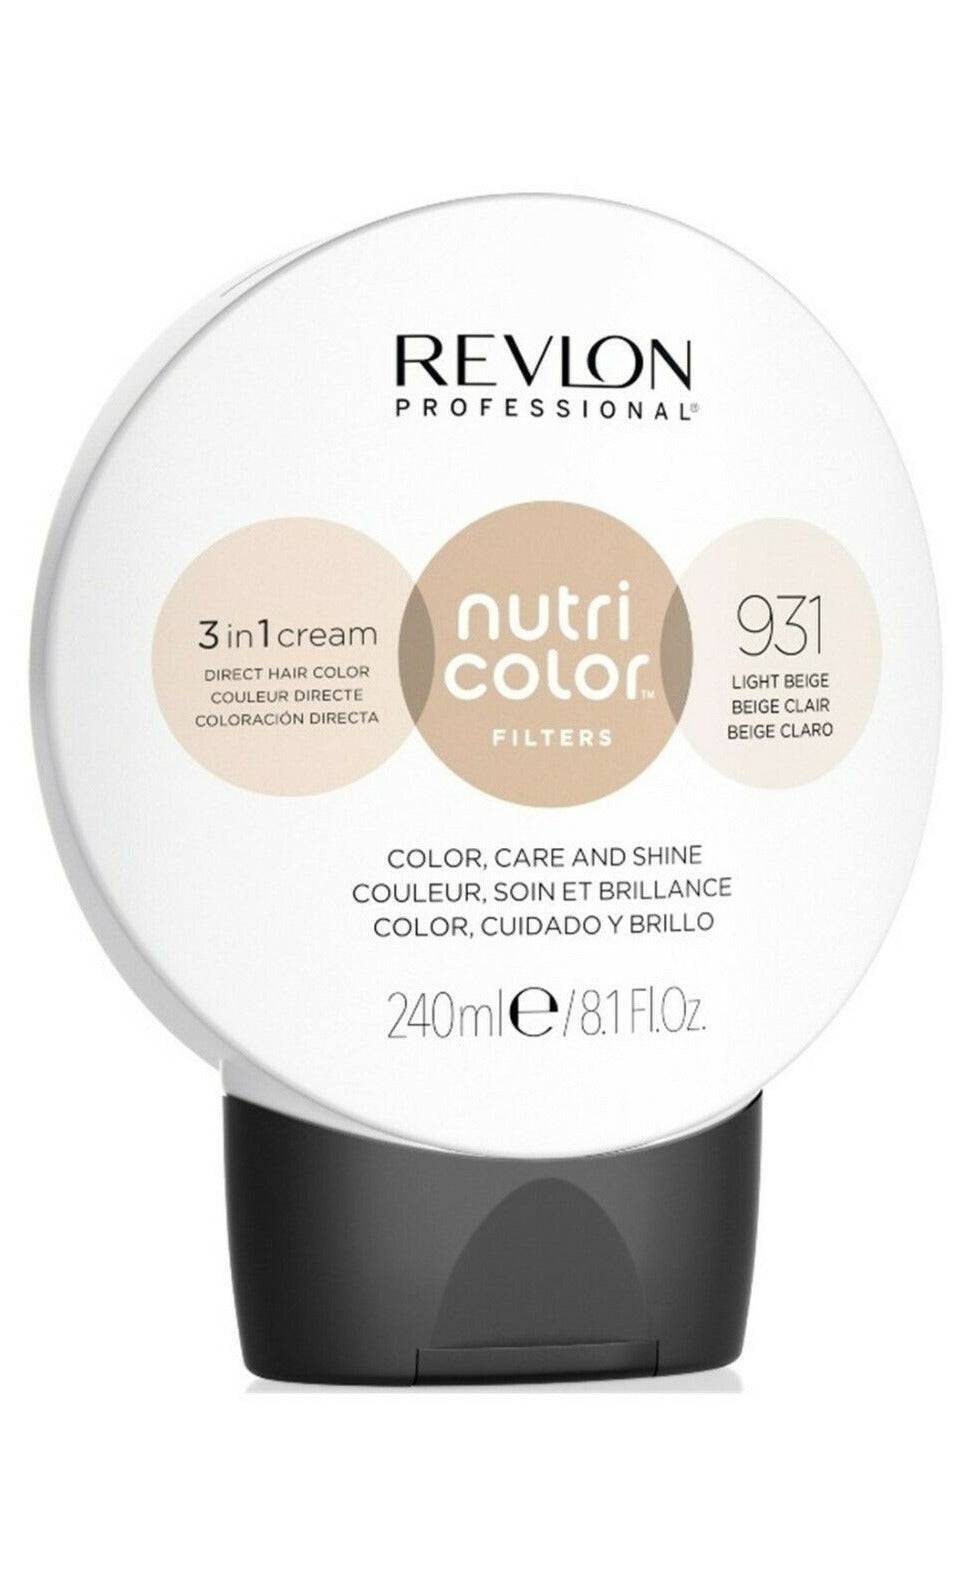 Revlon Professional Nutri Color Creme 3 in 1 Cream #931 Beige240 – Australian